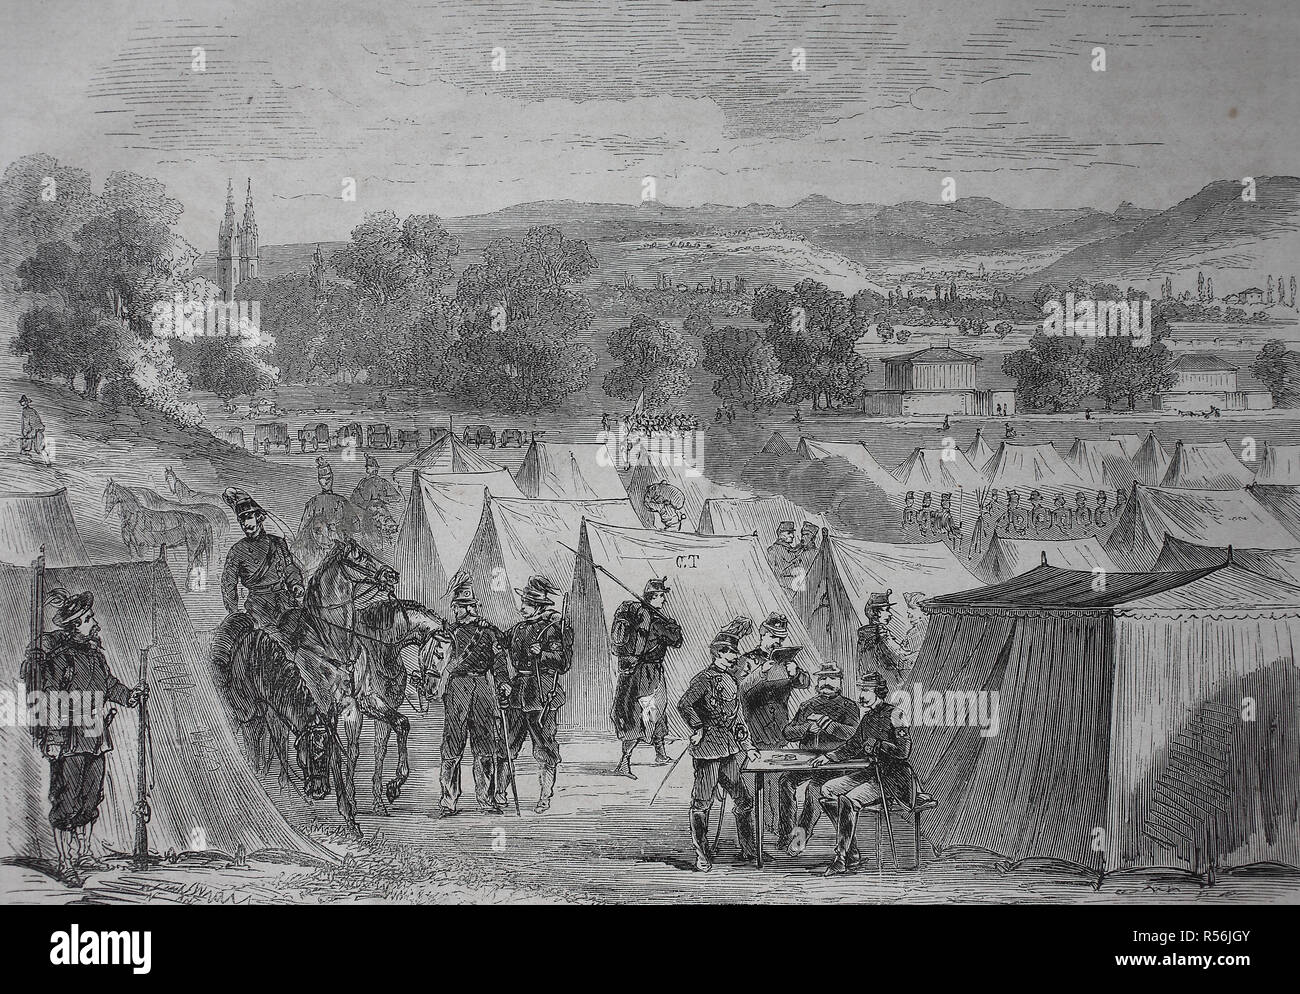 Camp suisse Bruderholz à près de Bâle, guerre de 1870 ou la guerre franco-allemande, woodcut, Suisse 1870/1871 Banque D'Images